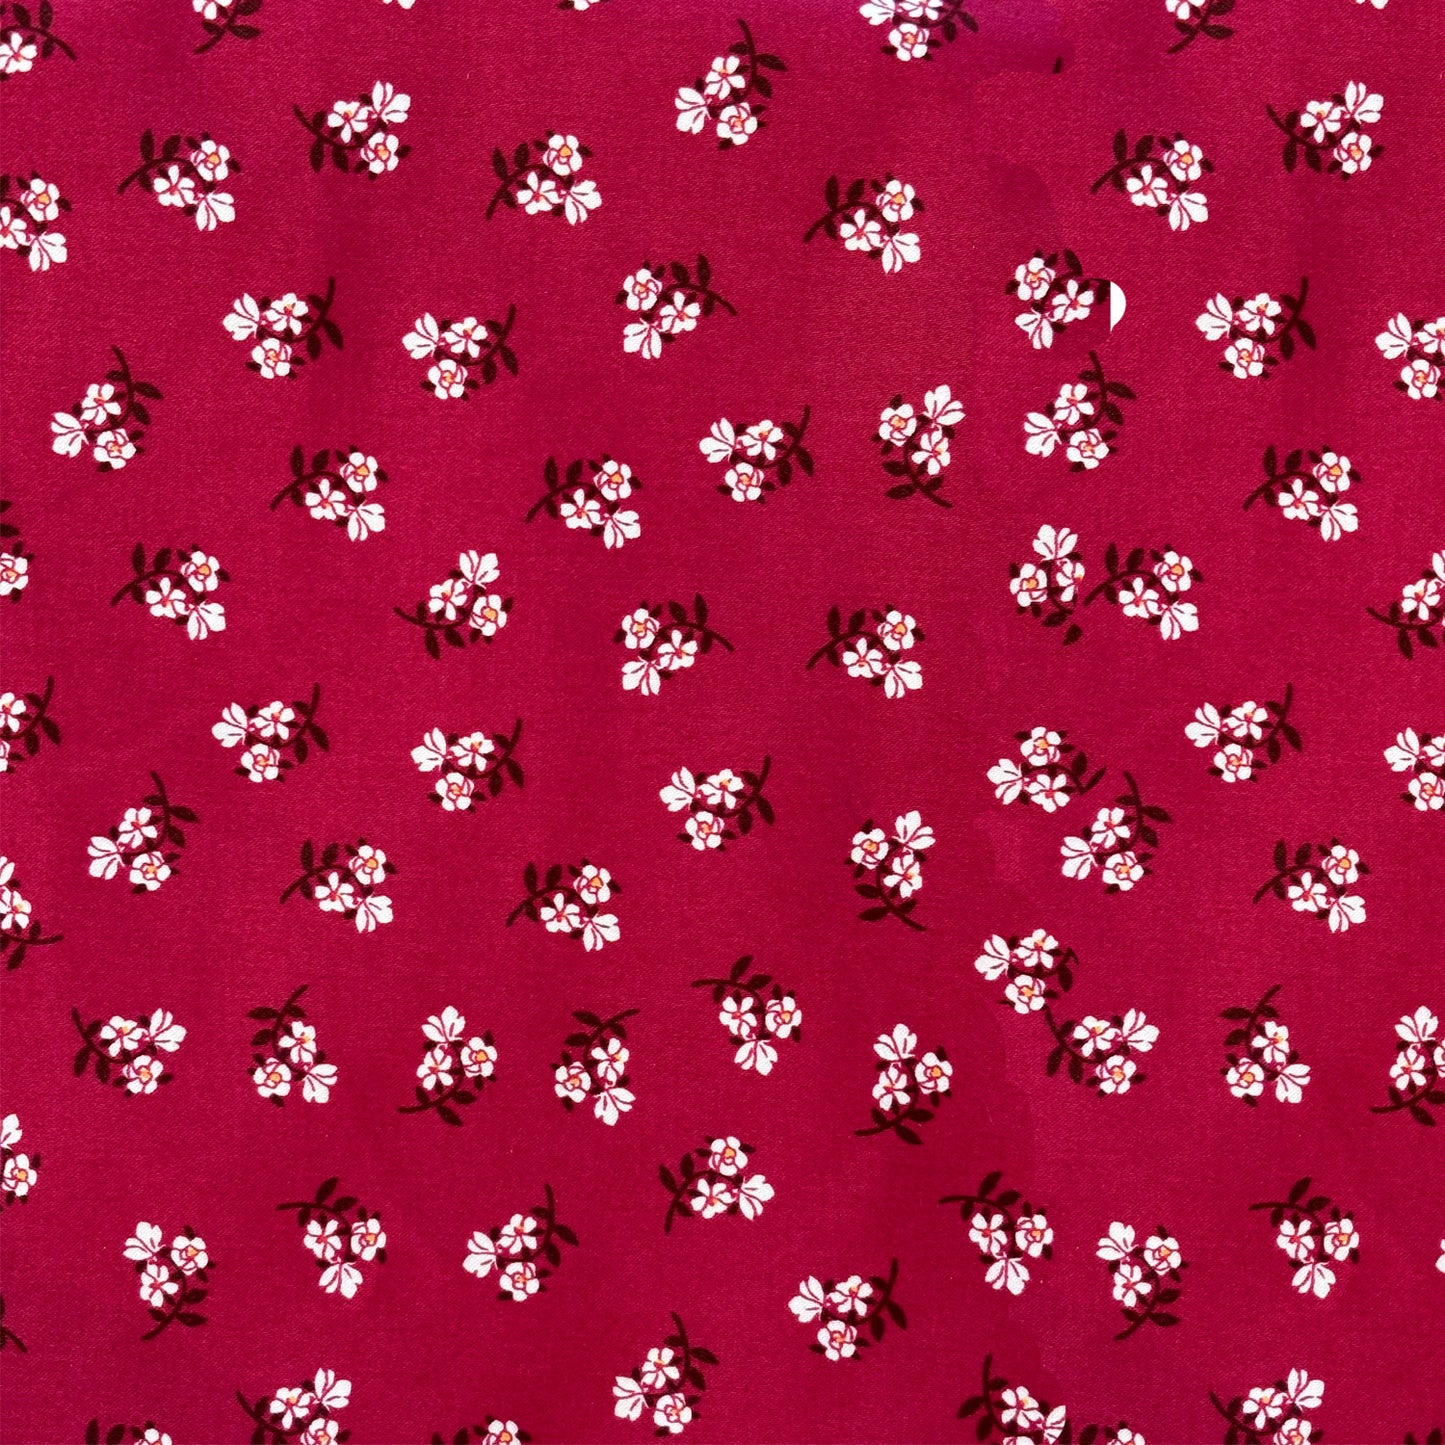 Sewing Kit - Pamela Pant Pattern + Fabric Kit #1